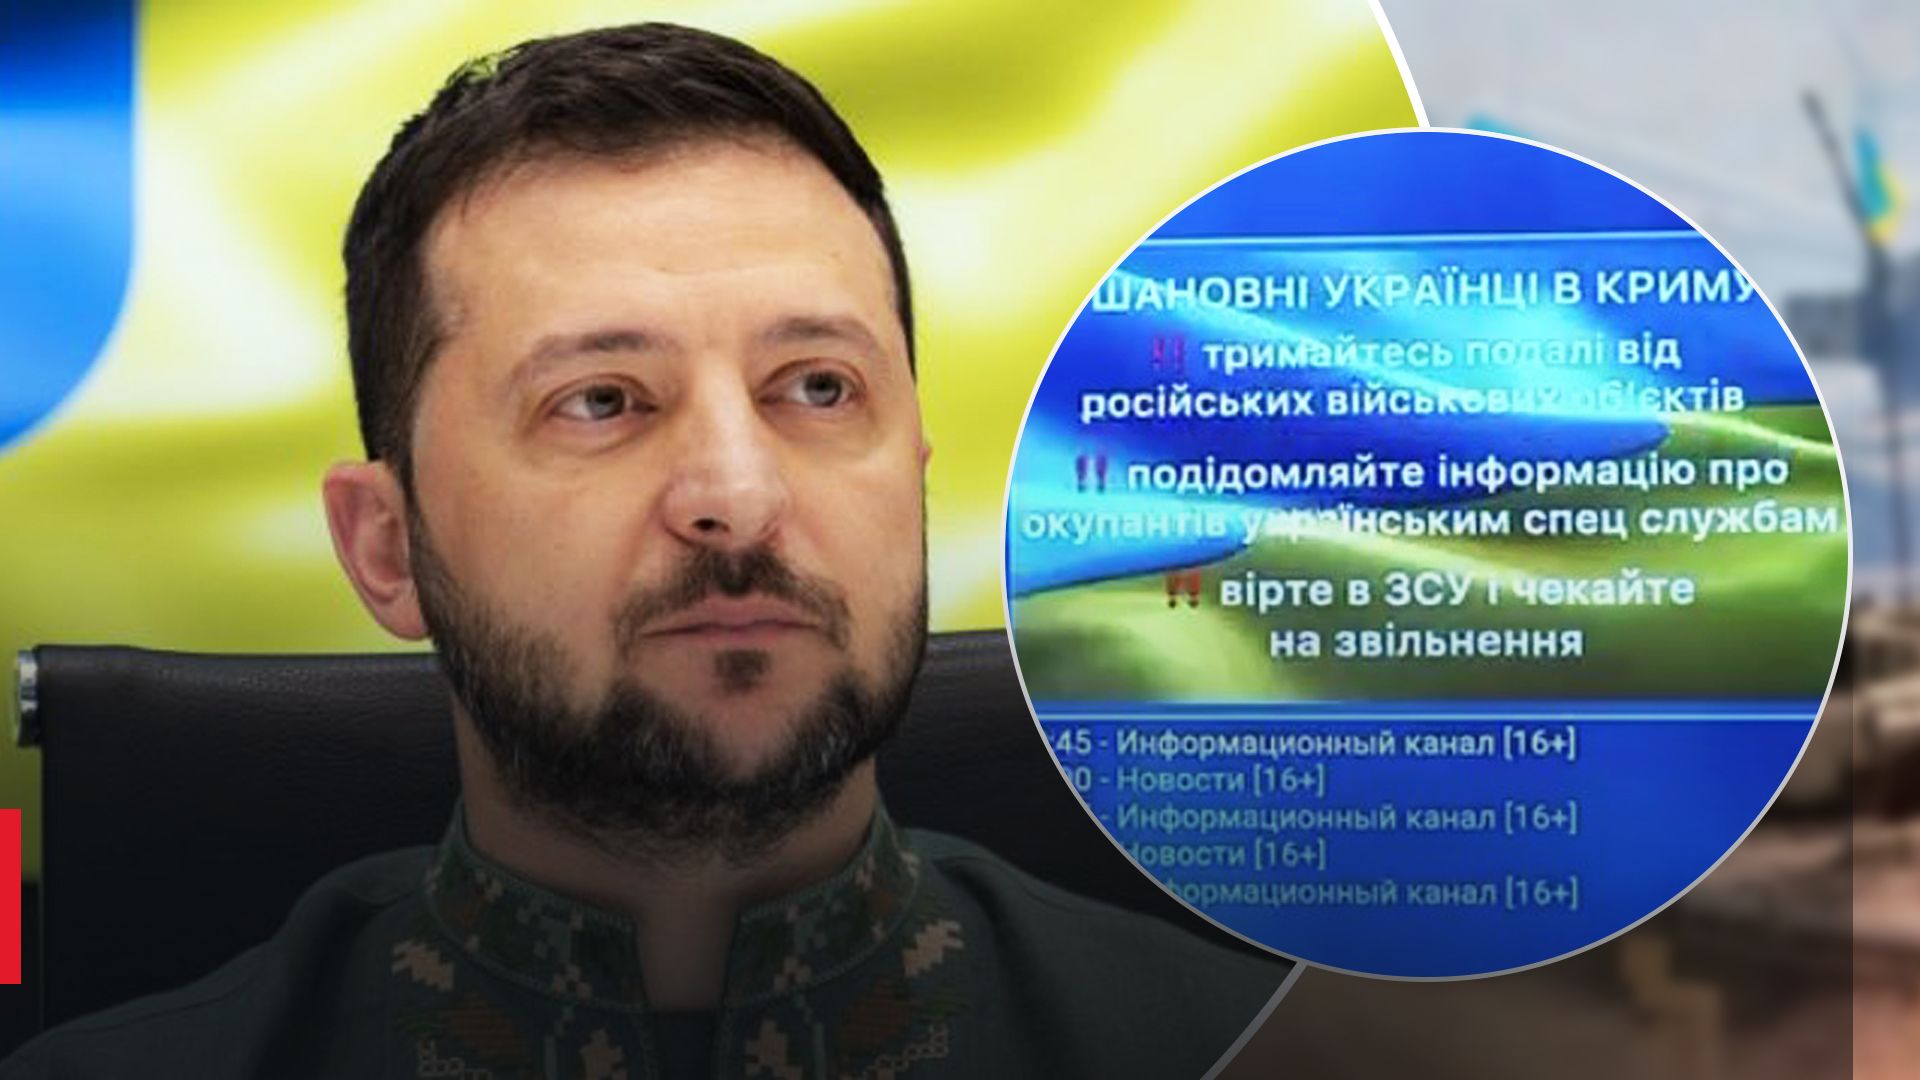 Хакеры сломали российское телевидение в Крыму и показали обращение Зеленского - 24 Канал